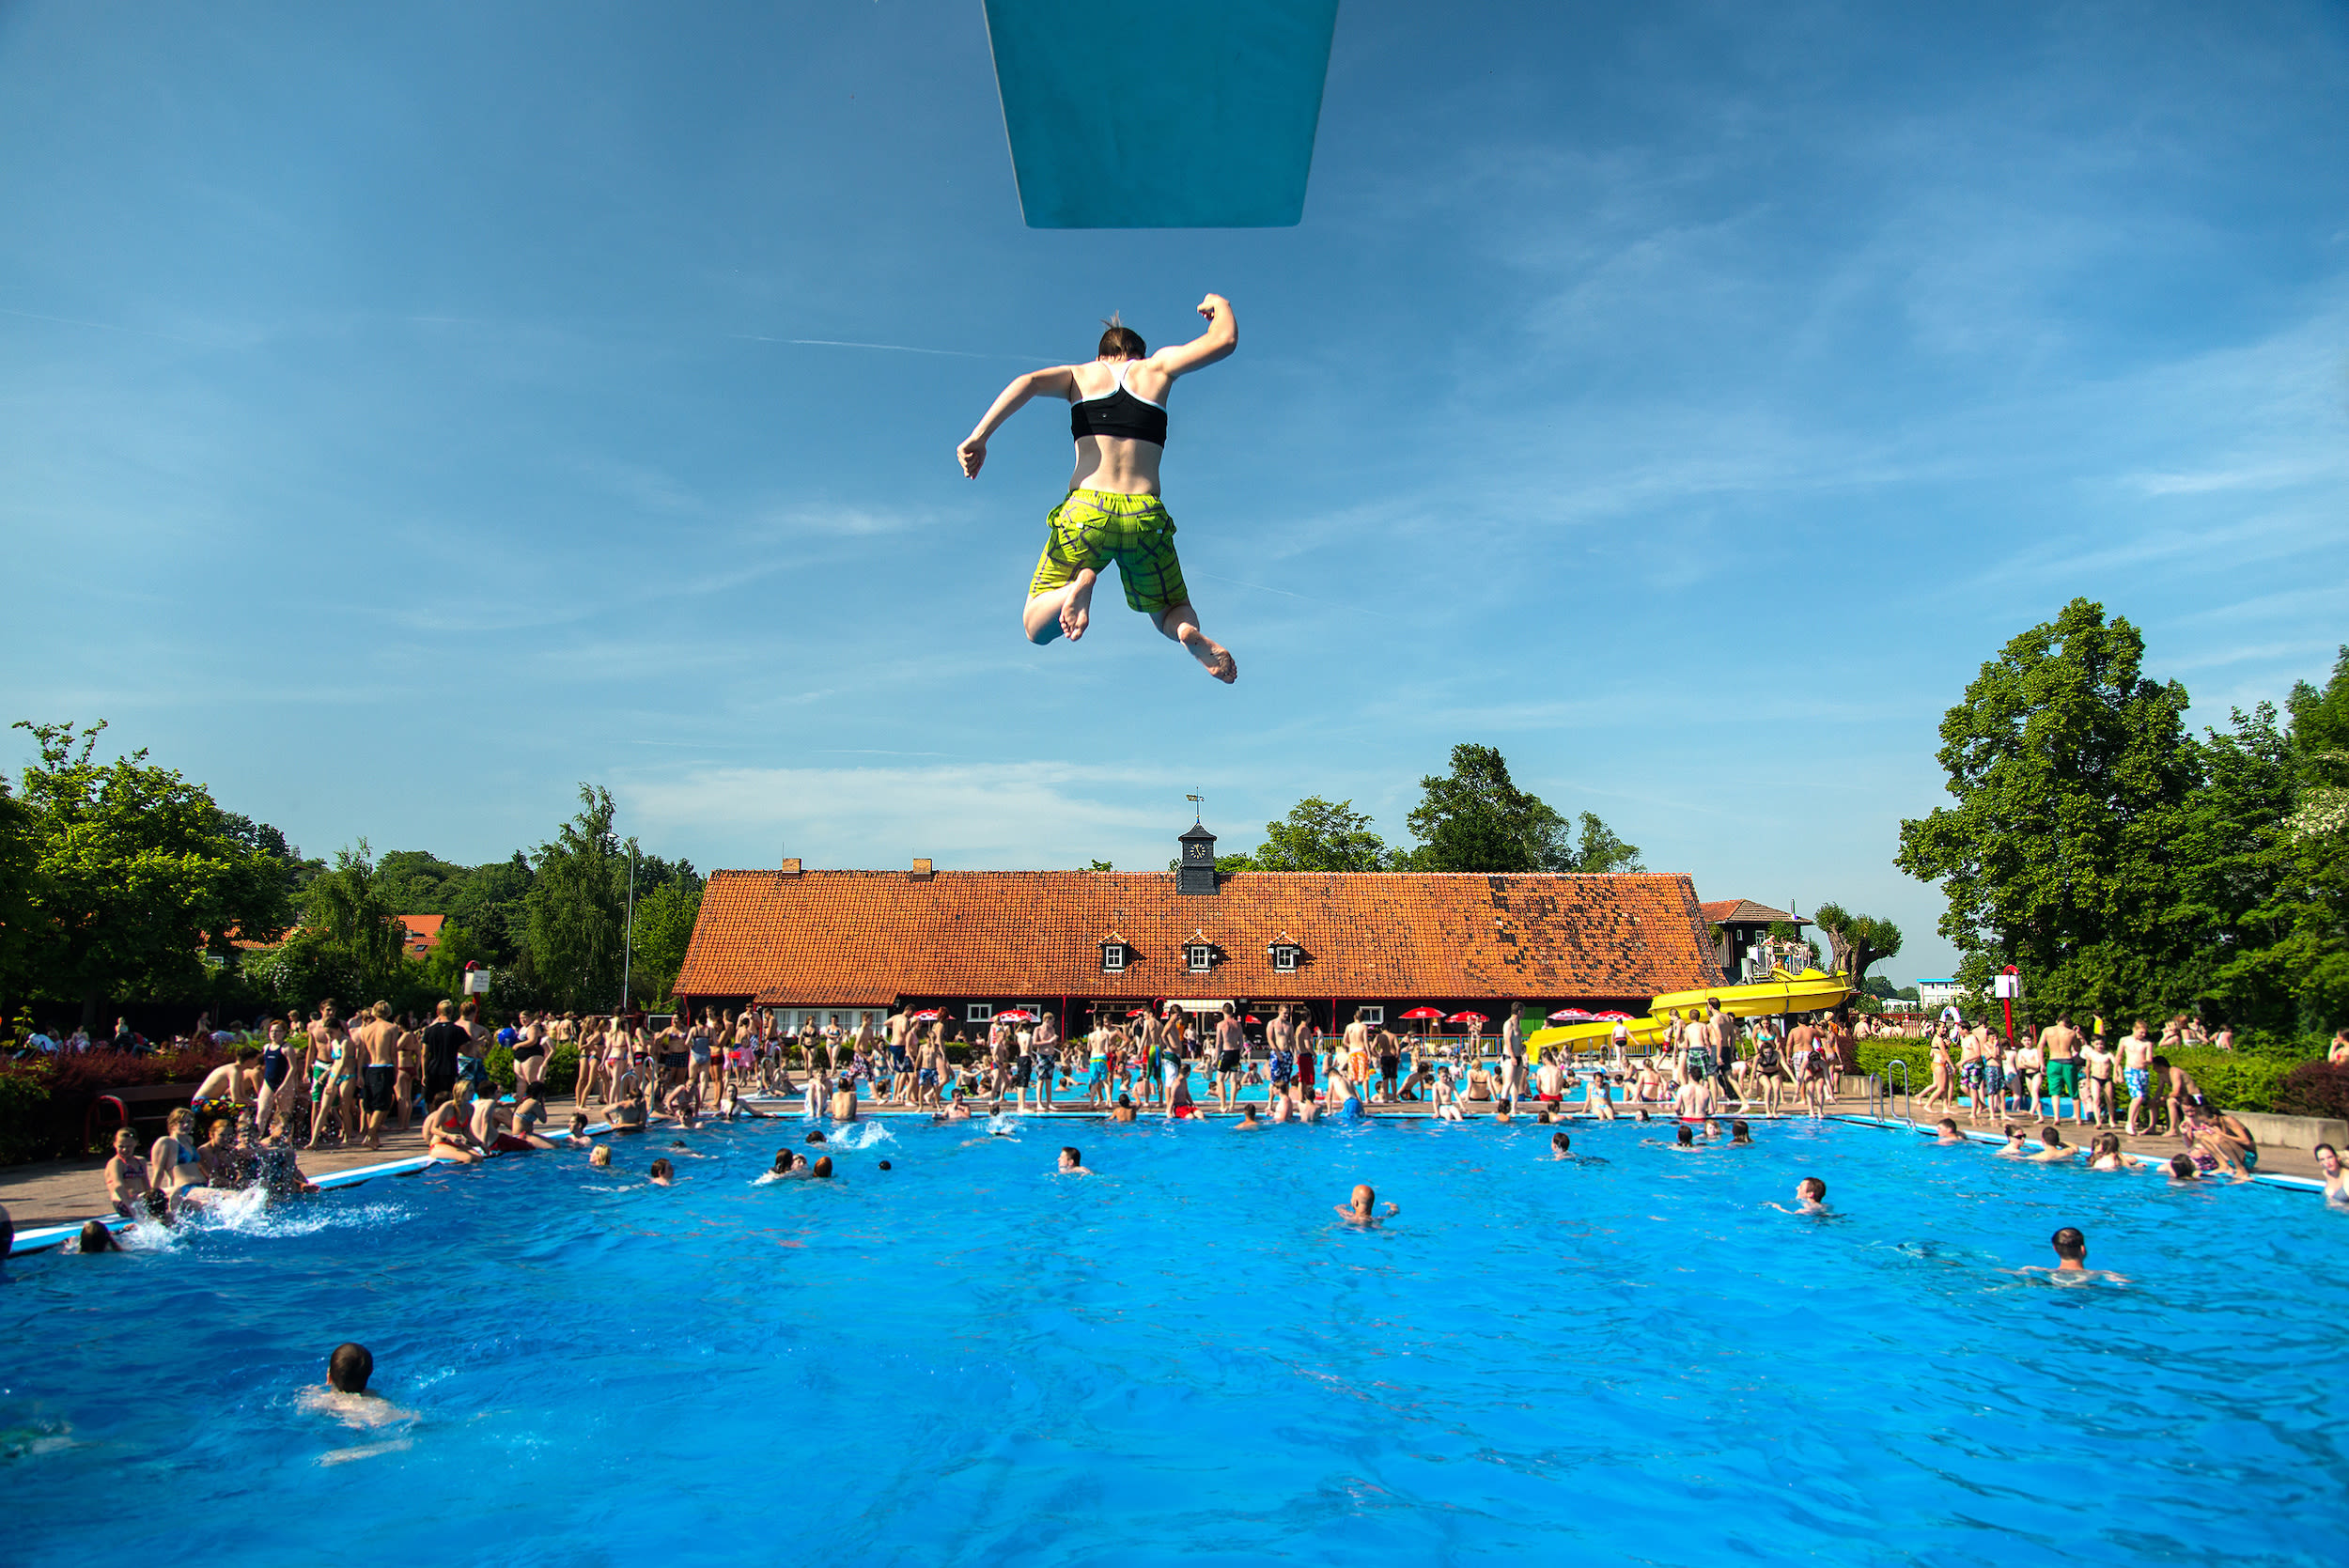 Buitenzwembad biedt verkoeling tijdens hitte. Foto: AdobeStock / Janni.